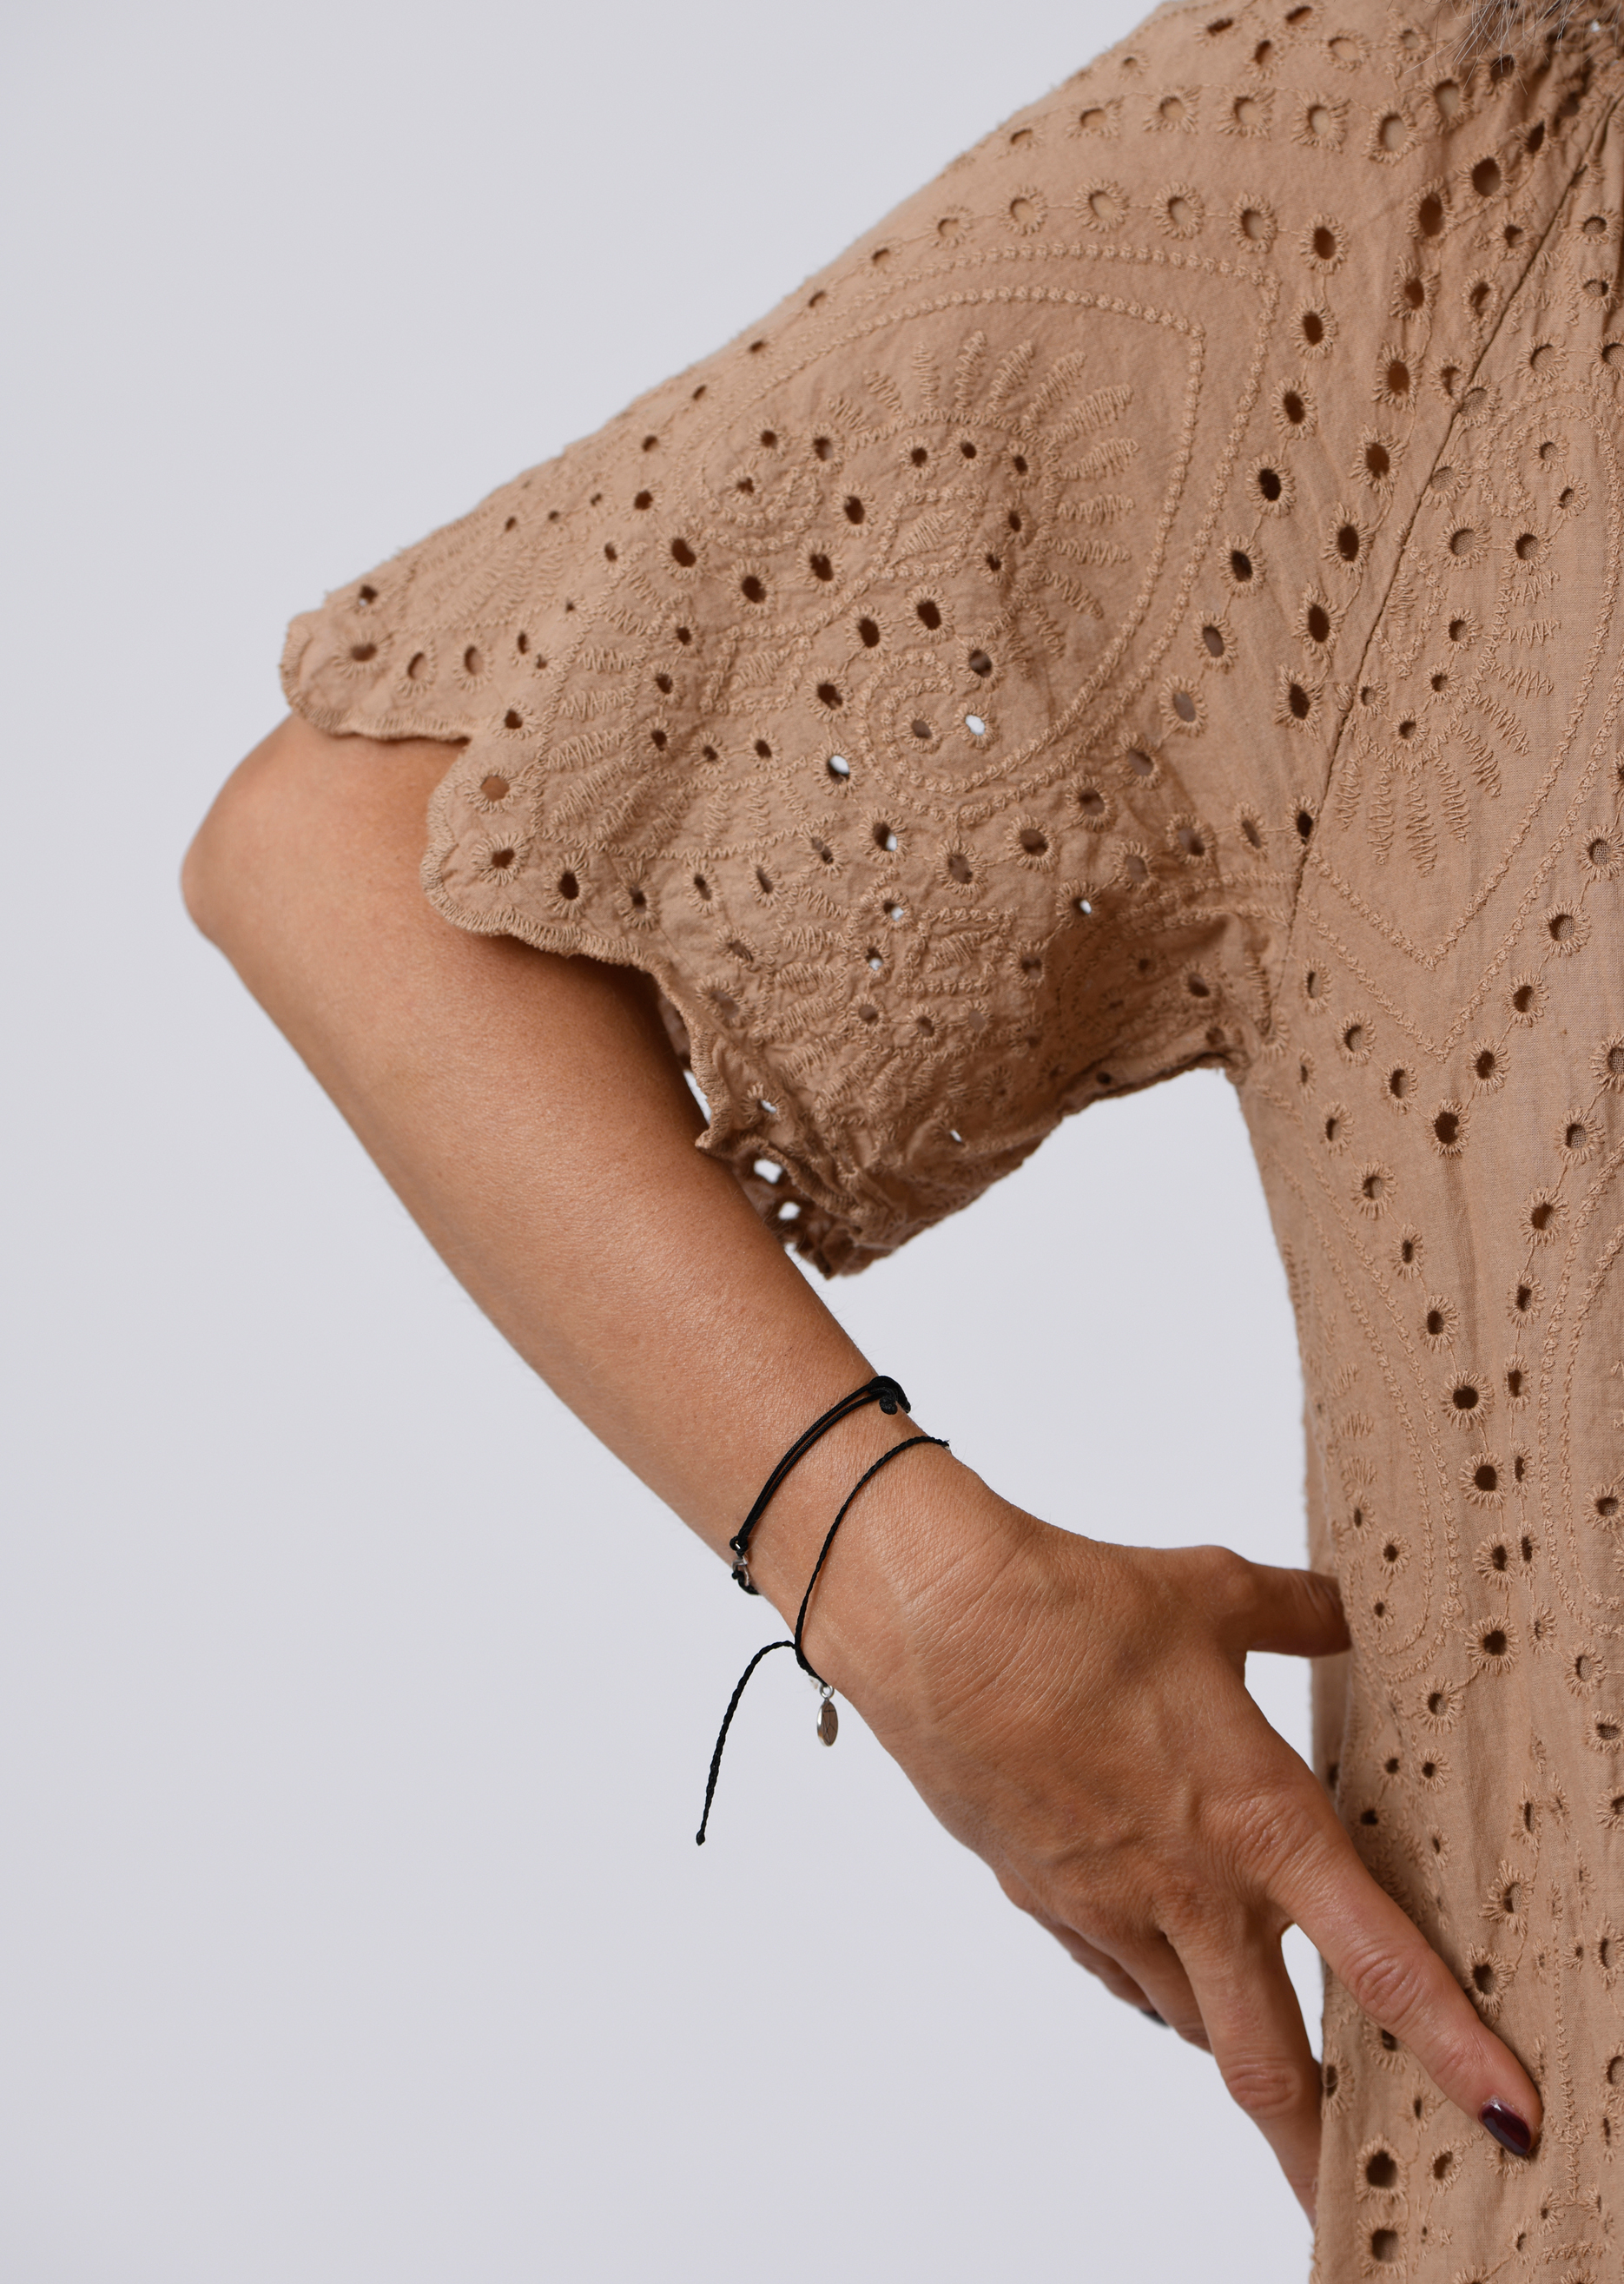 mit | Kleid SALE nougat aus langes Salzkorn-Fashion | Kleider Farbe | in Lochspitze Carmenausschnitt